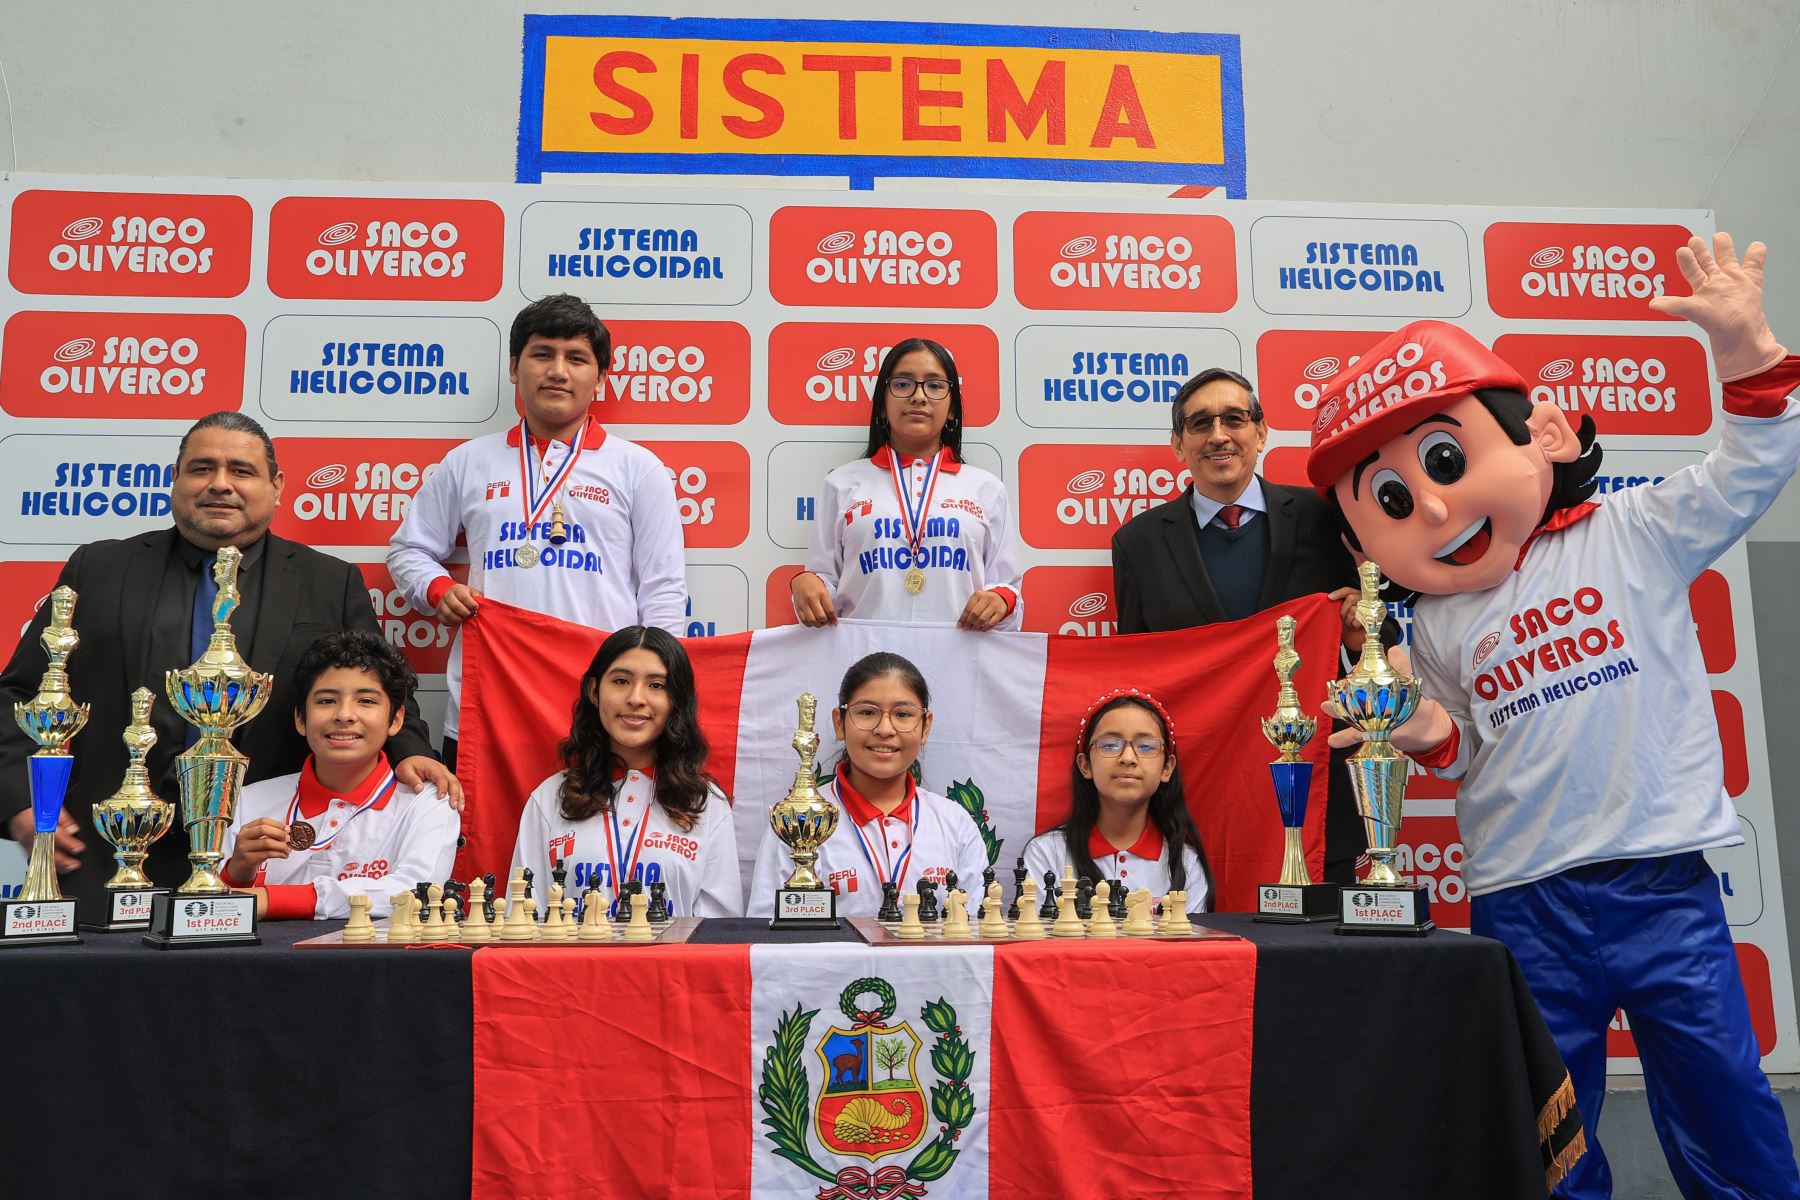 El equipo peruano se coronó campeón mundial escolar de ajedrez en Panamá, tras superar a cerca de 600 ajedrecistas de 36 países. El colegio Saco Oliveros es la institución educativa que aportó la mayor cantidad de ajedrecistas a la delegación mundialista. 
Foto: ANDINA/Andrés Valle